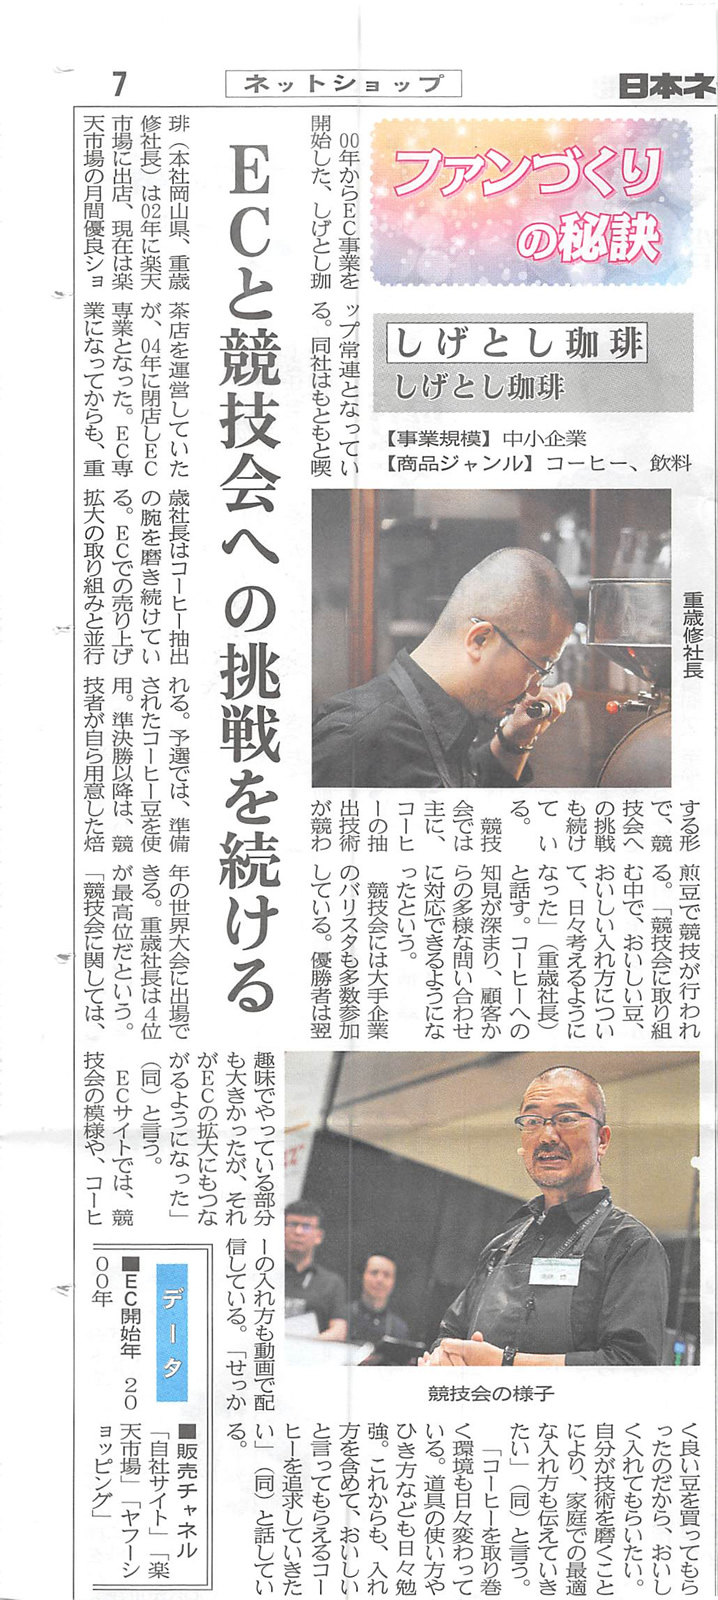 日本ネット経済新聞様に取り上げていただきました。